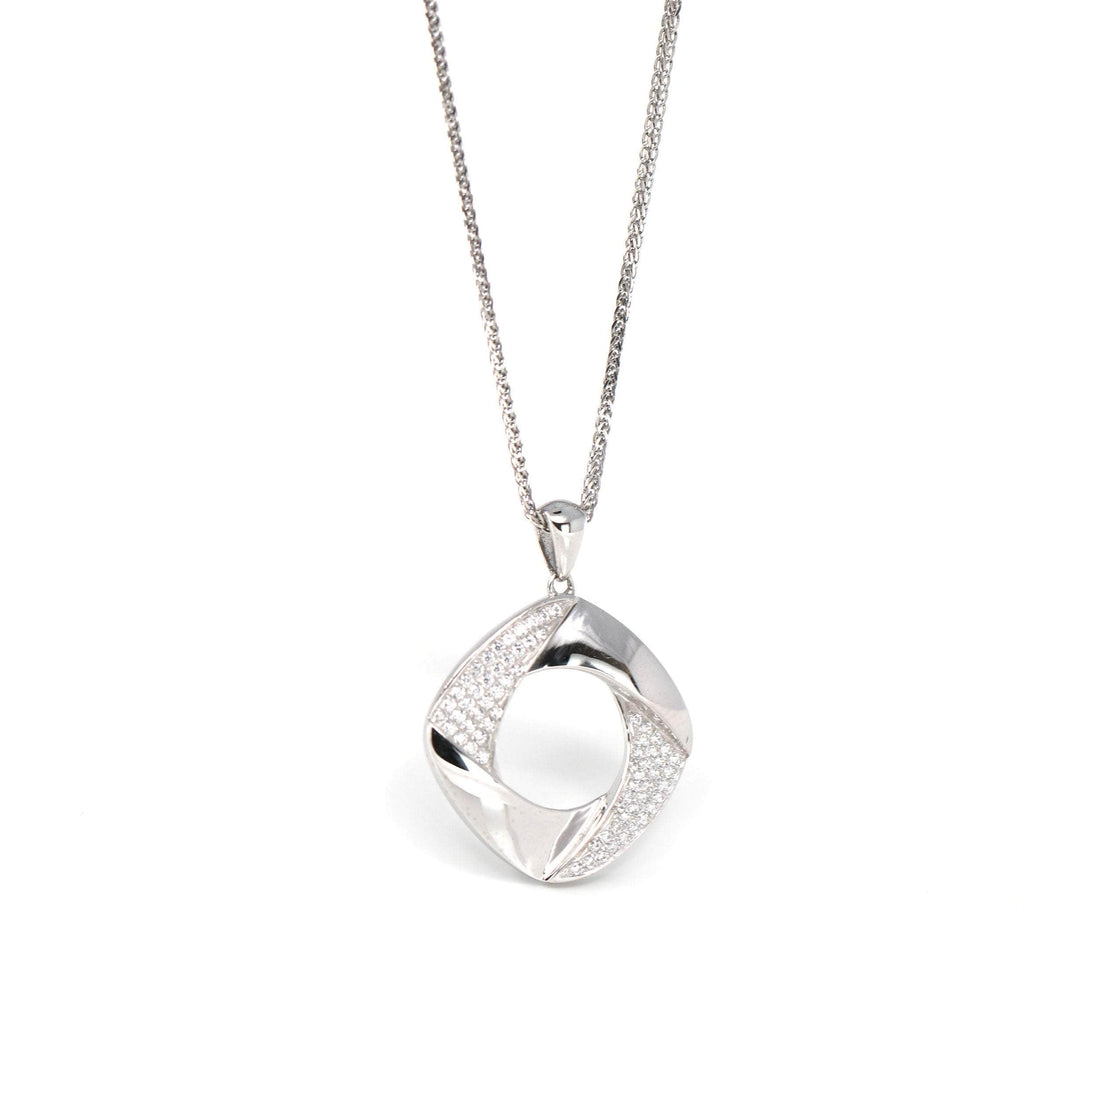 Baikalla Jewelry gemstone jewelry 18k White Gold Necklace With Zircon